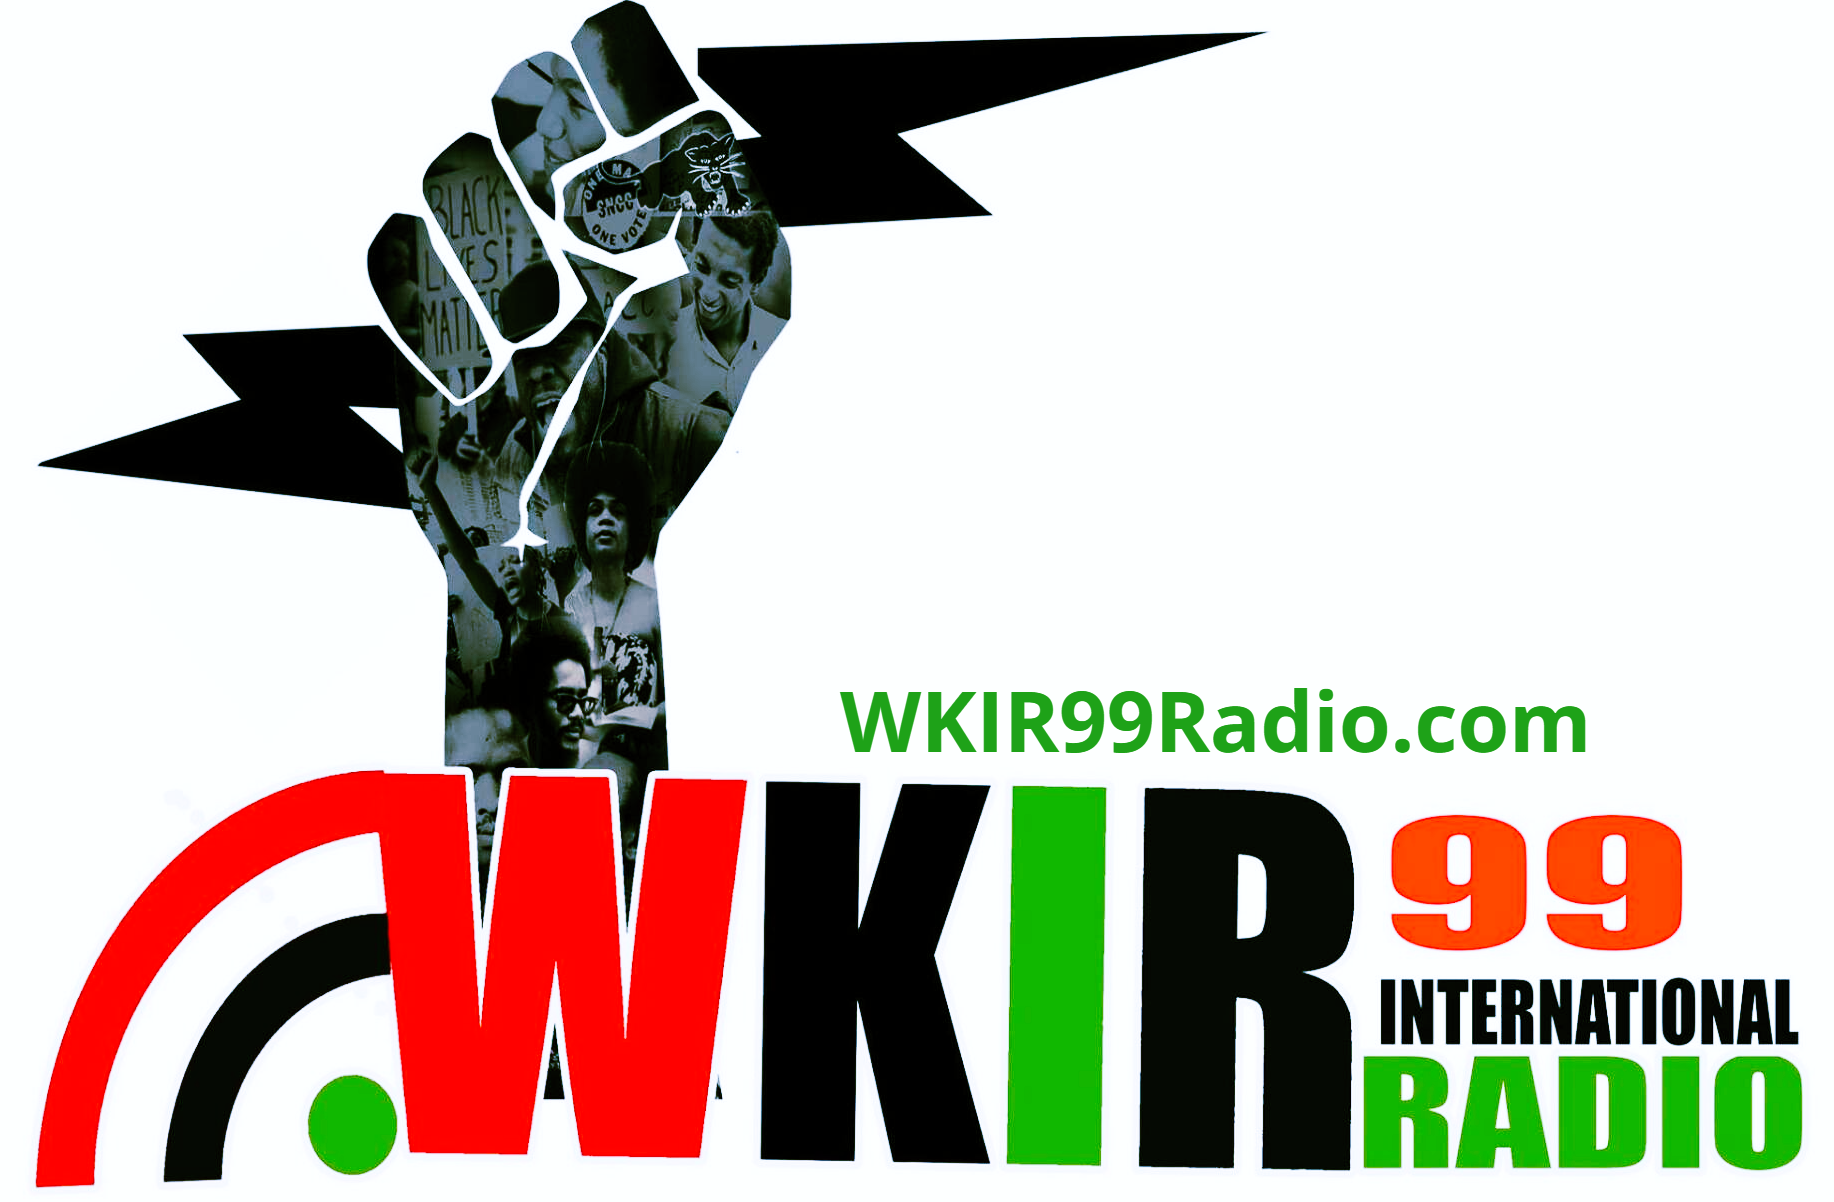 Go to  www.WKIR99Radio.com